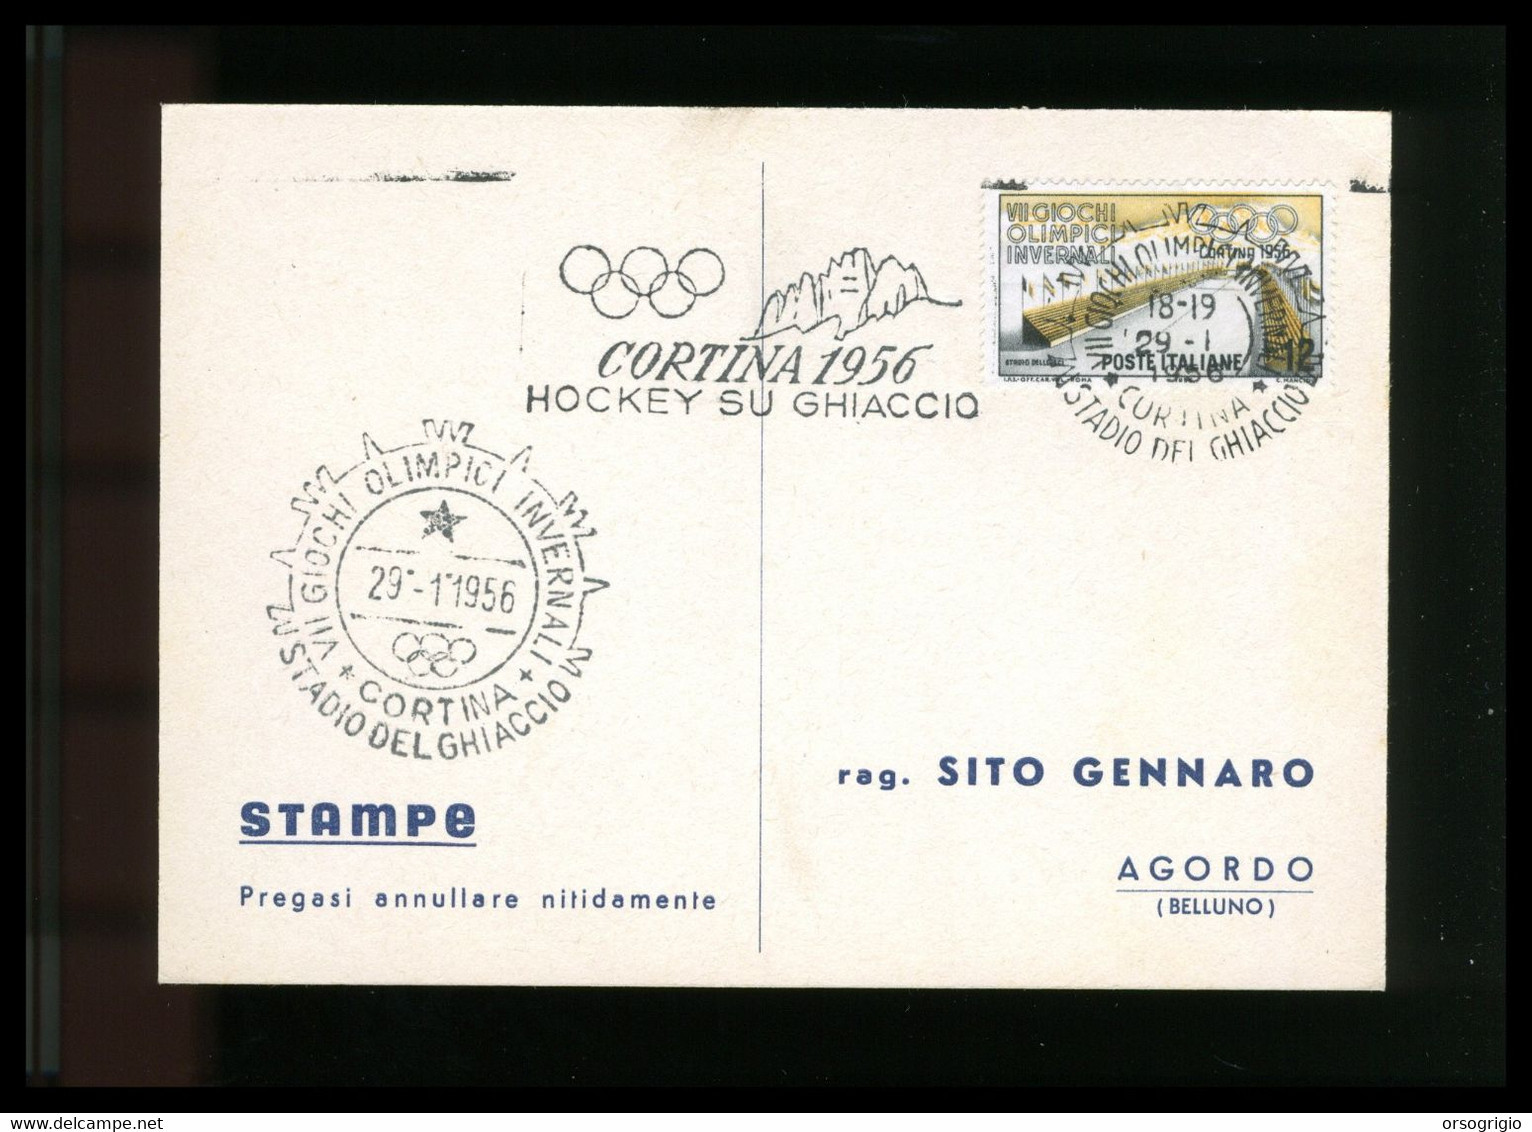 ITALIA - 1956 GIOCHI OLIMPICI INVERNALI Di CORTINA D'AMPEZZO - HOCKEY SU GHIACCIO -  29-1-1956    LUSSO - Hiver 1956: Cortina D'Ampezzo